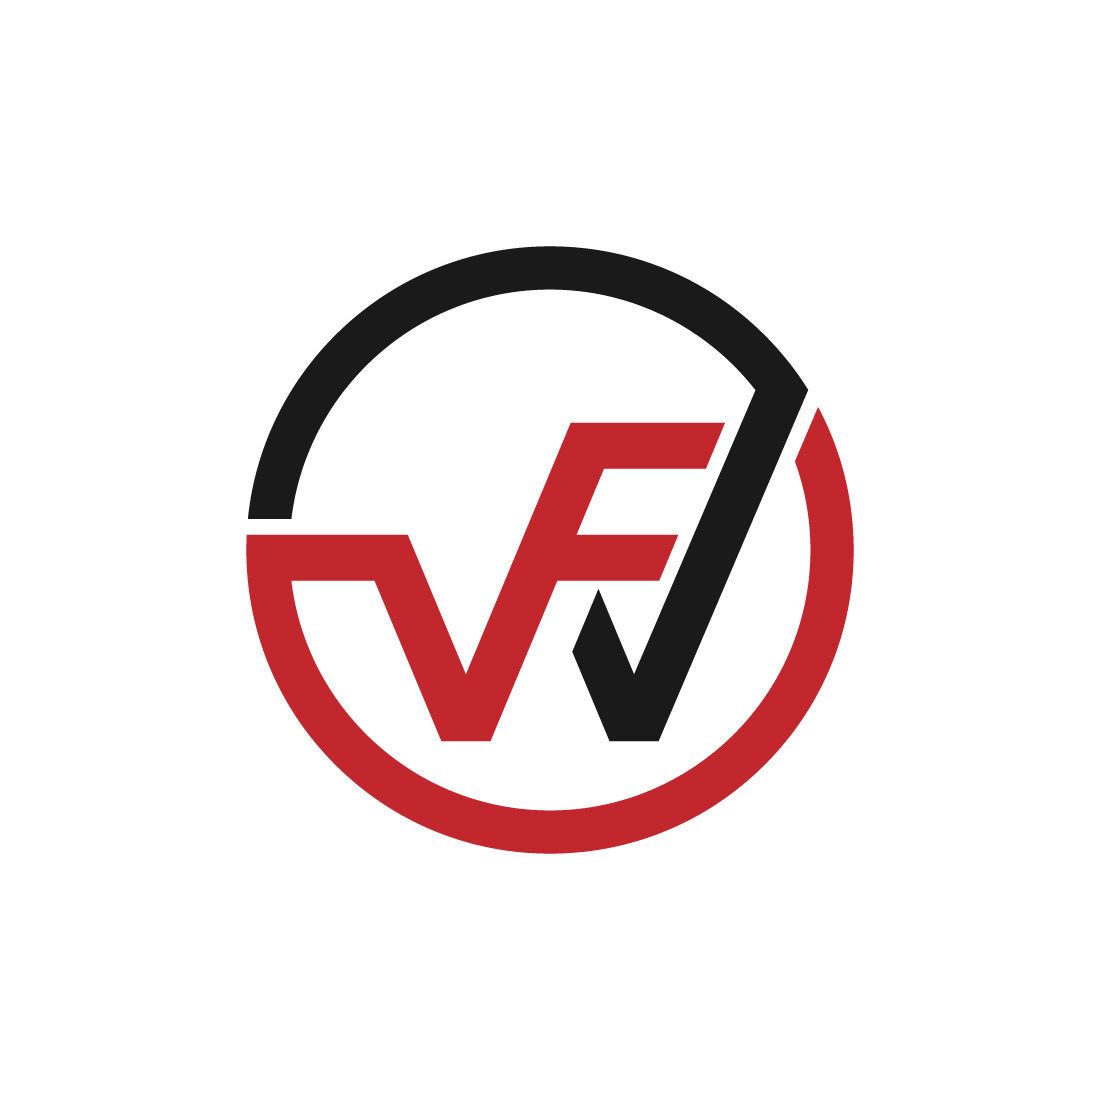 WVF logo design preview image.